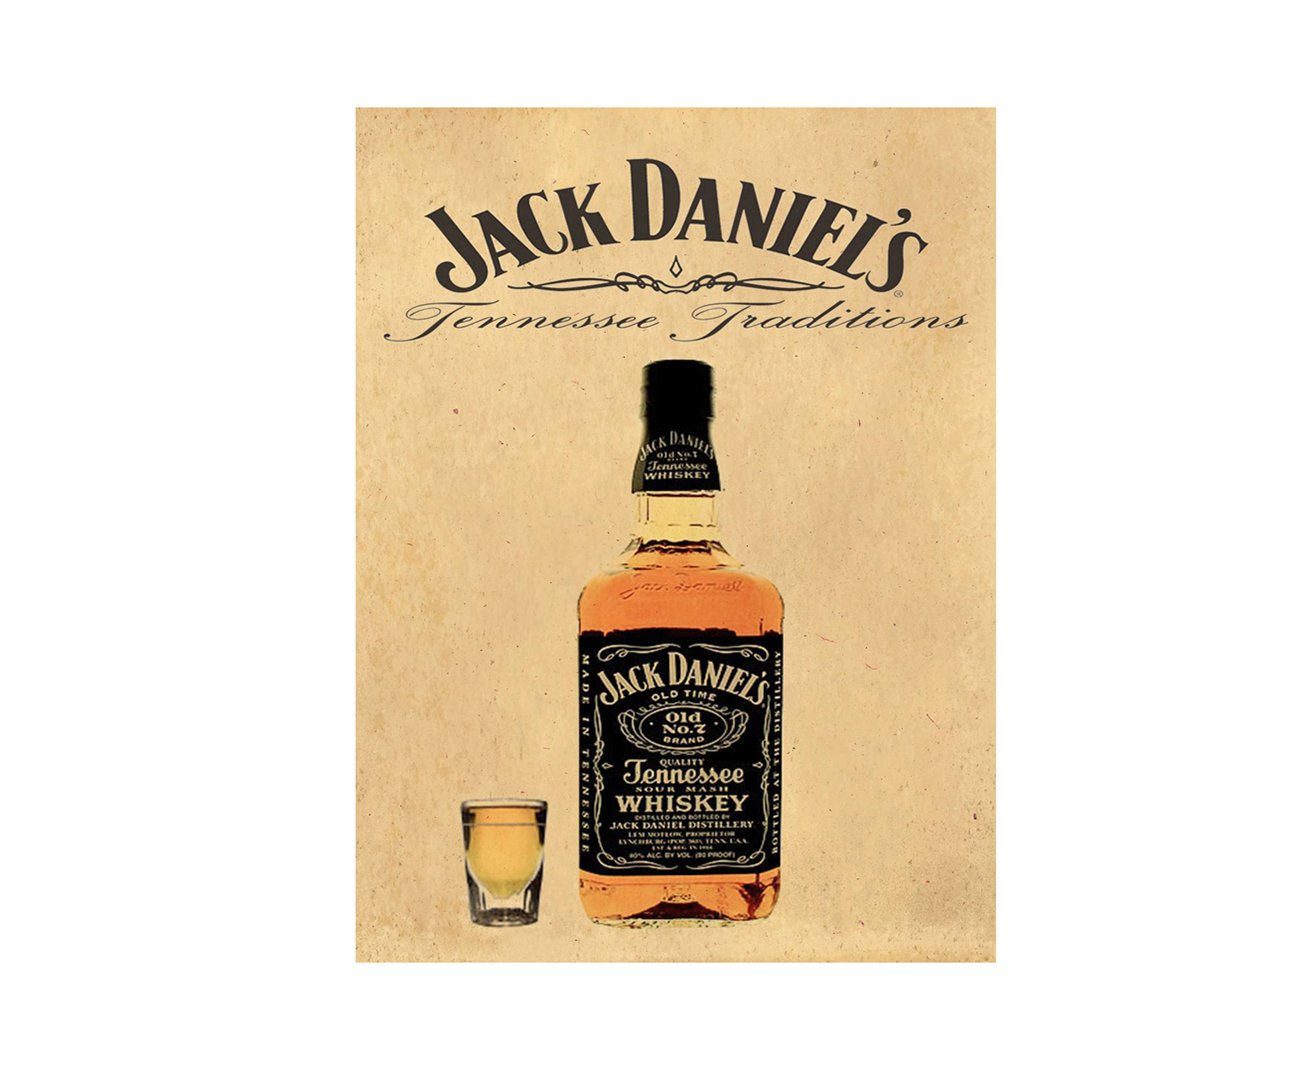 Placa All Classics Jack Daniels Traditions